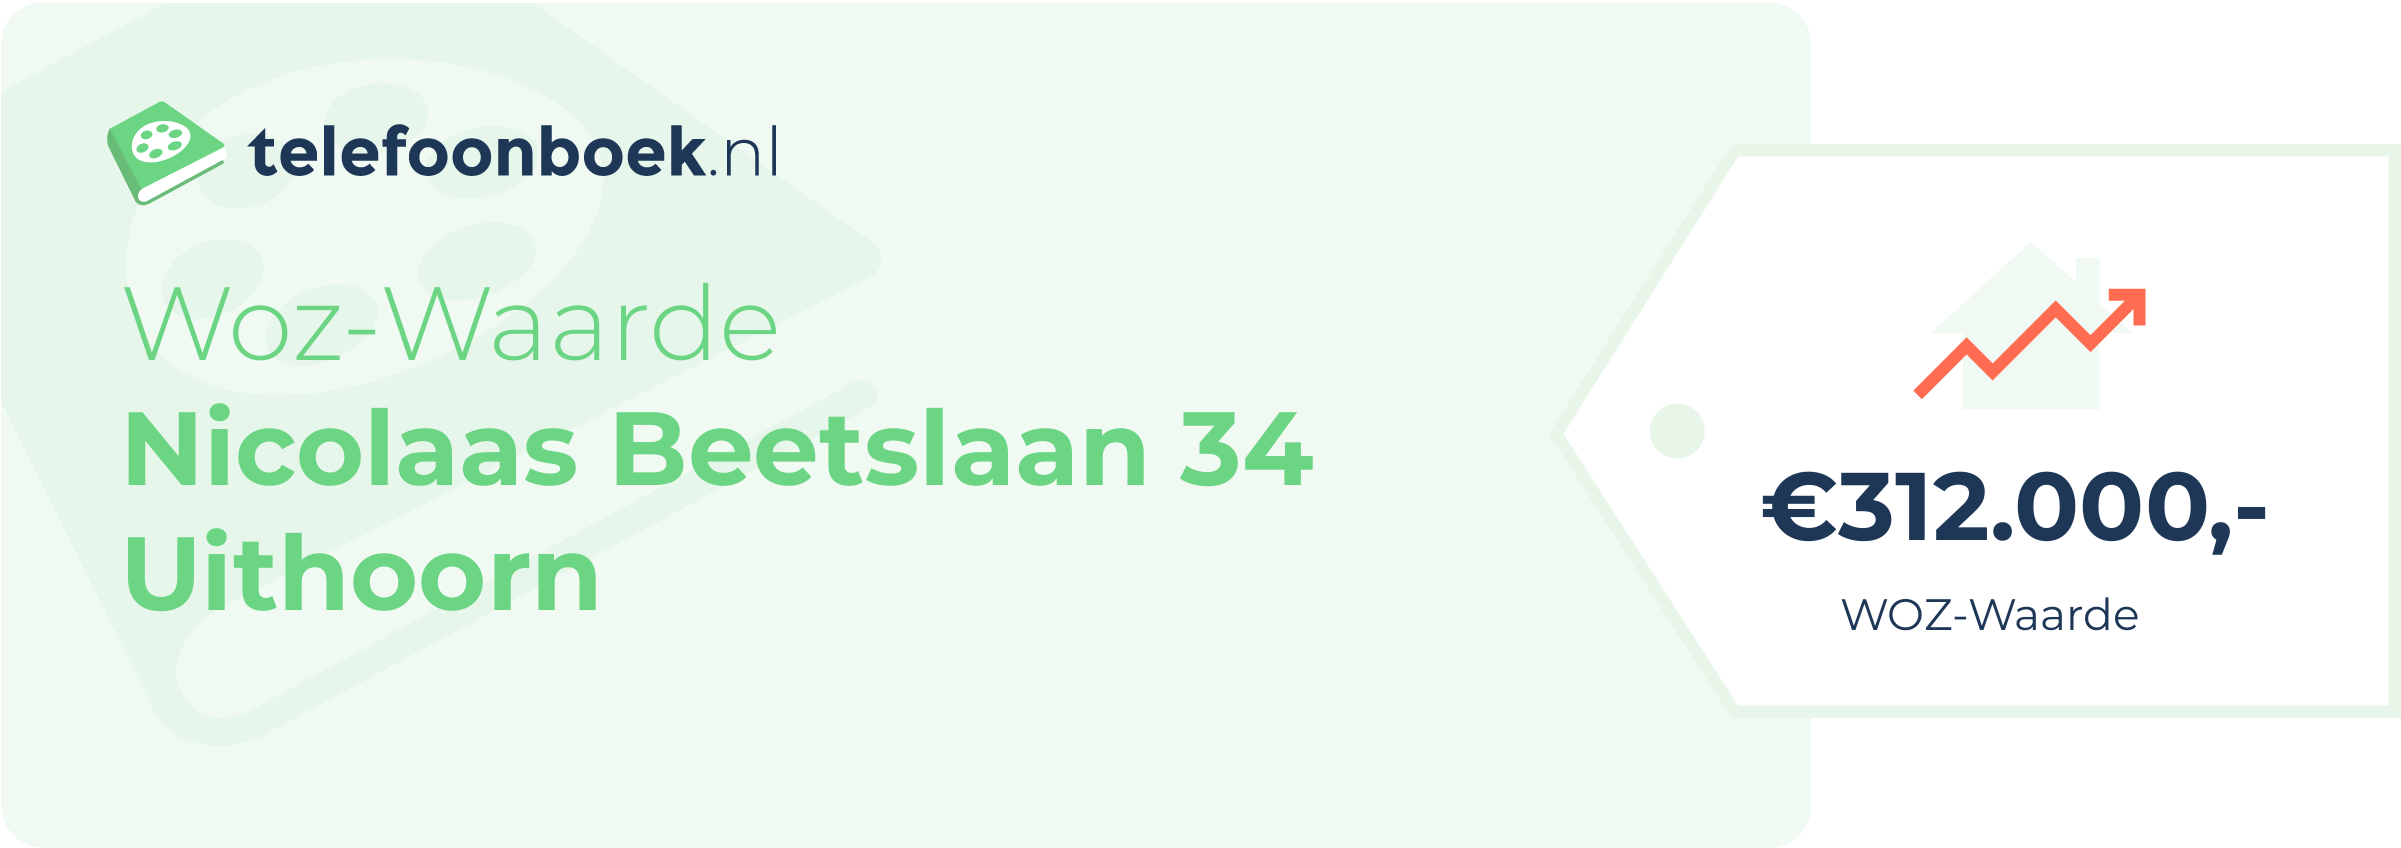 WOZ-waarde Nicolaas Beetslaan 34 Uithoorn